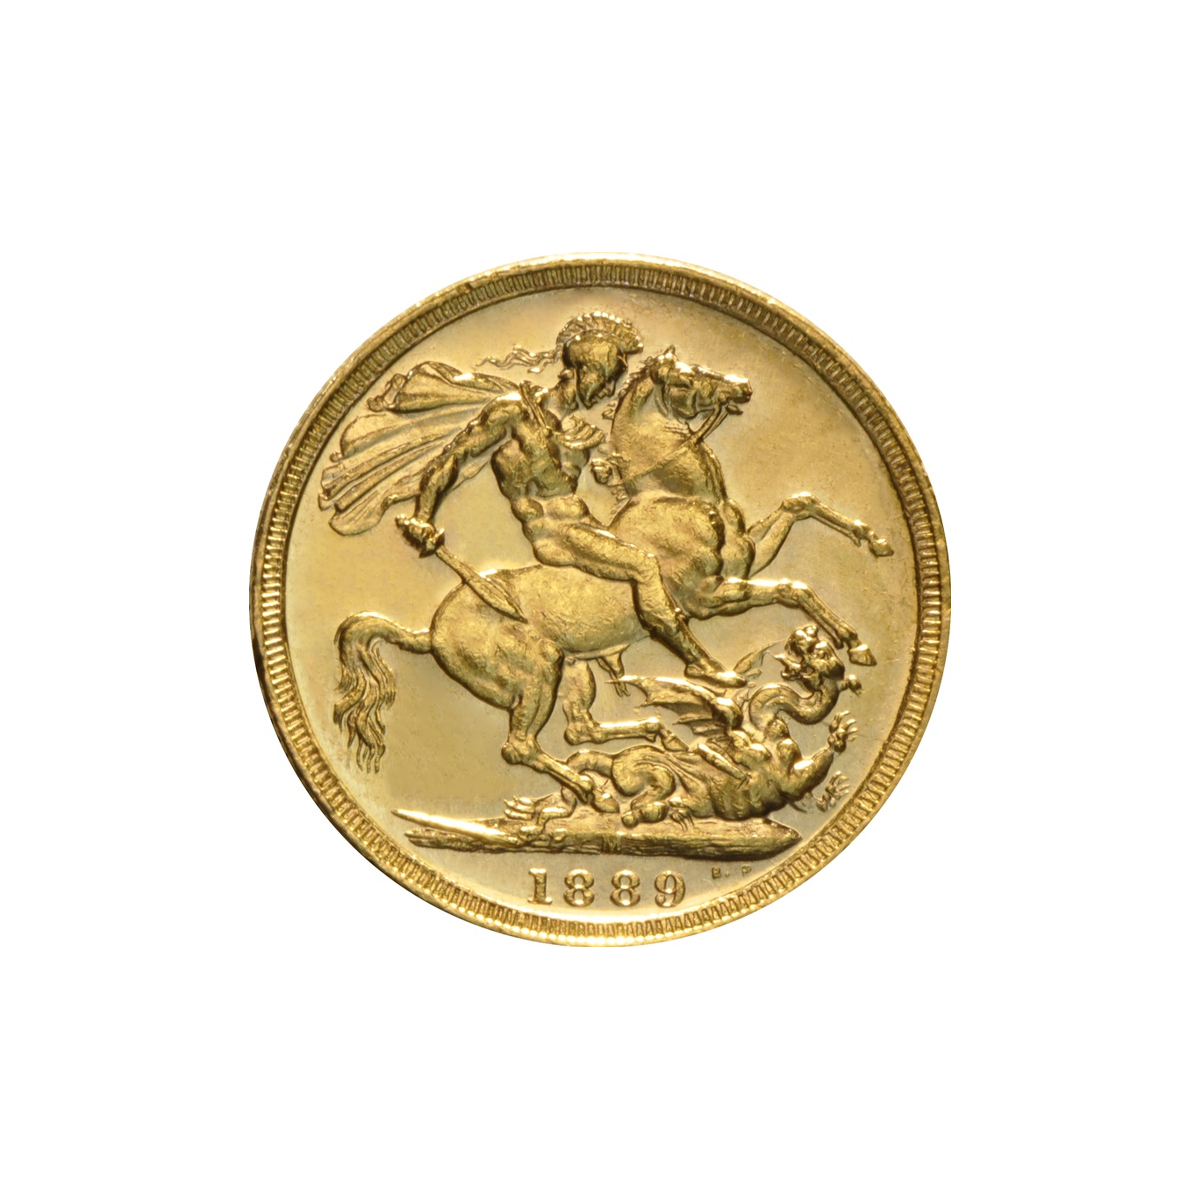 מטבע זהב סוברין - יובל למלכה ויקטוריה (מלבורן) 1889